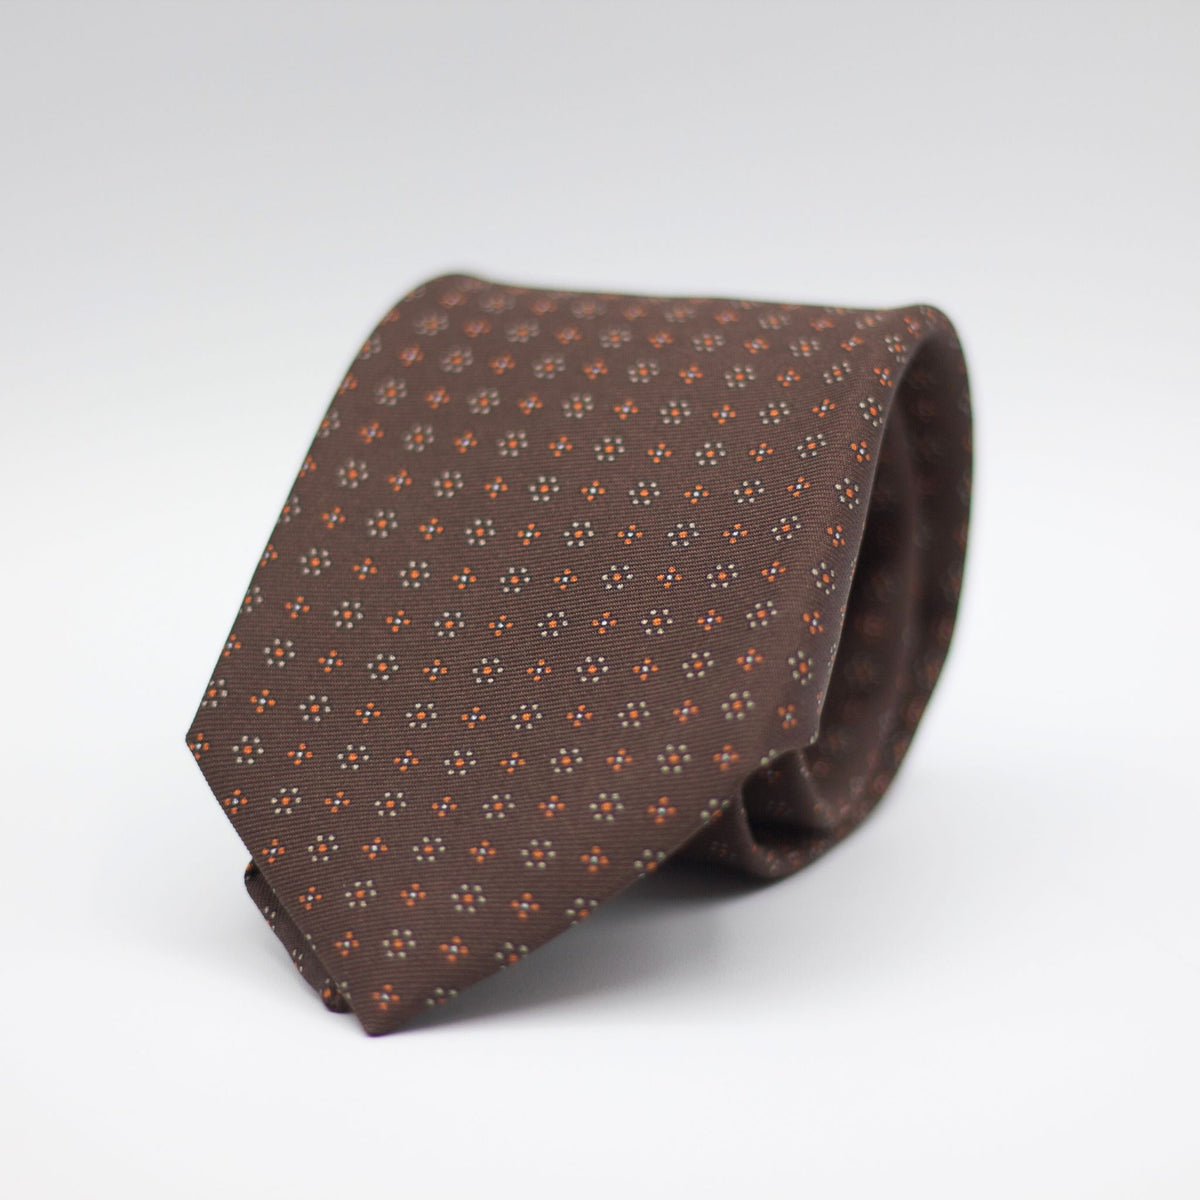 Holliday & Brown - Printed Silk - Brown/Orange/Off White motif tie 